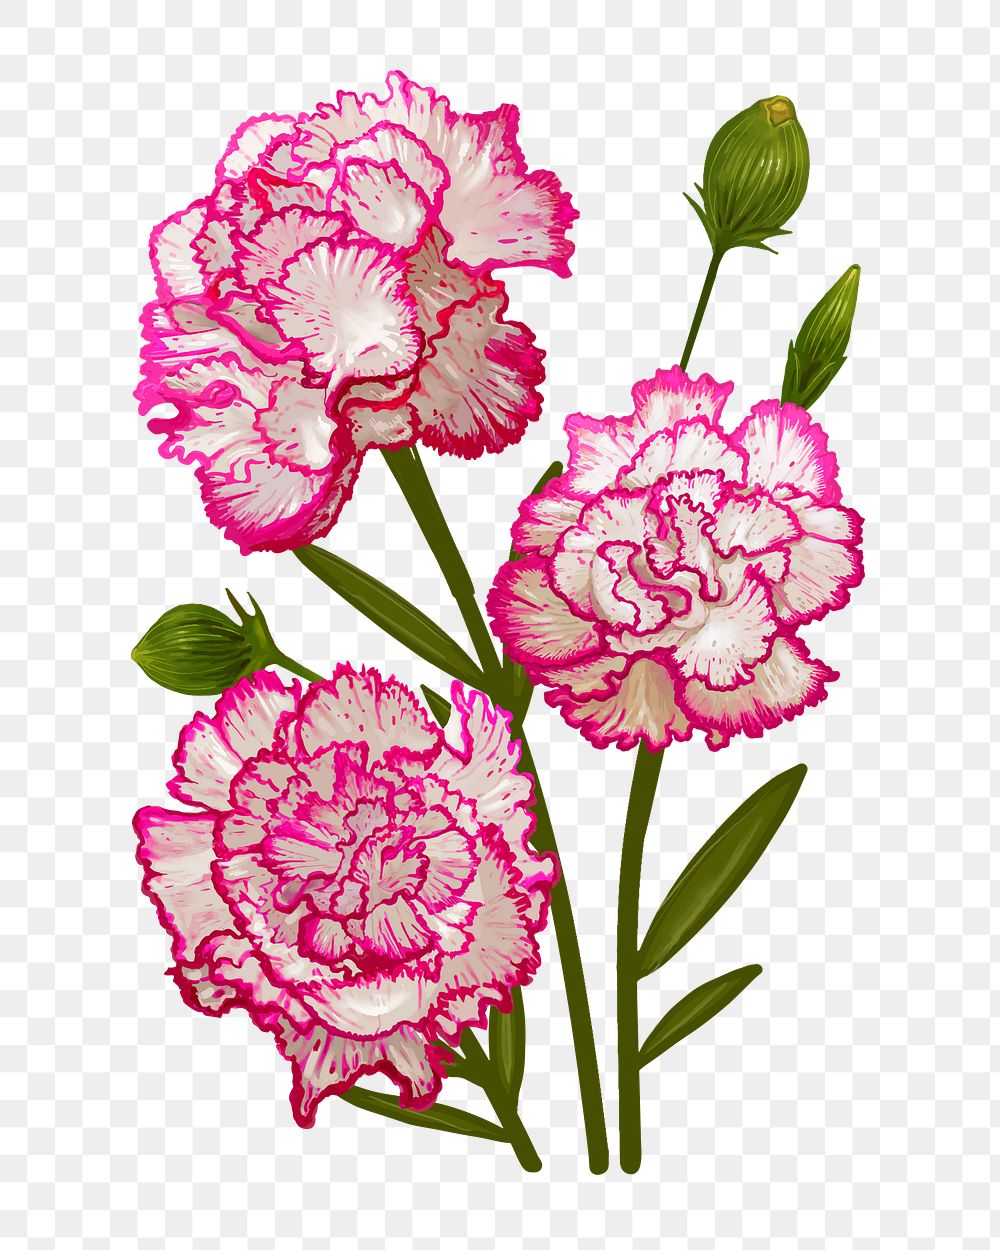 Carnations png flower sticker illustration, transparent background